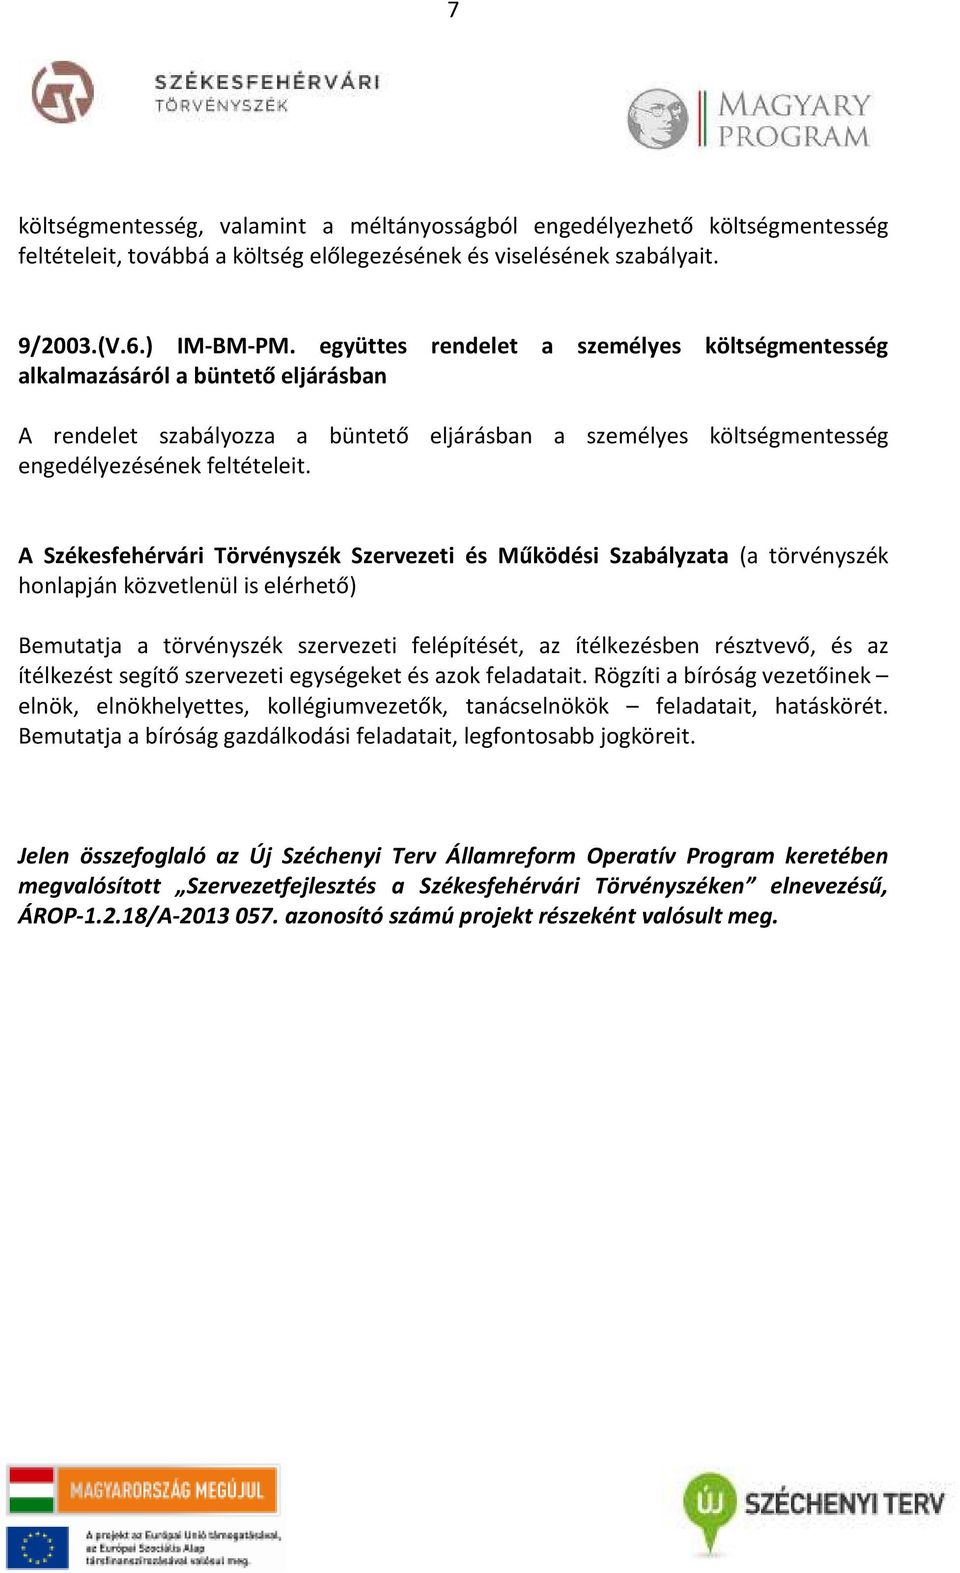 A Székesfehérvári Törvényszék Szervezeti és Működési Szabályzata (a törvényszék honlapján közvetlenül is elérhető) Bemutatja a törvényszék szervezeti felépítését, az ítélkezésben résztvevő, és az